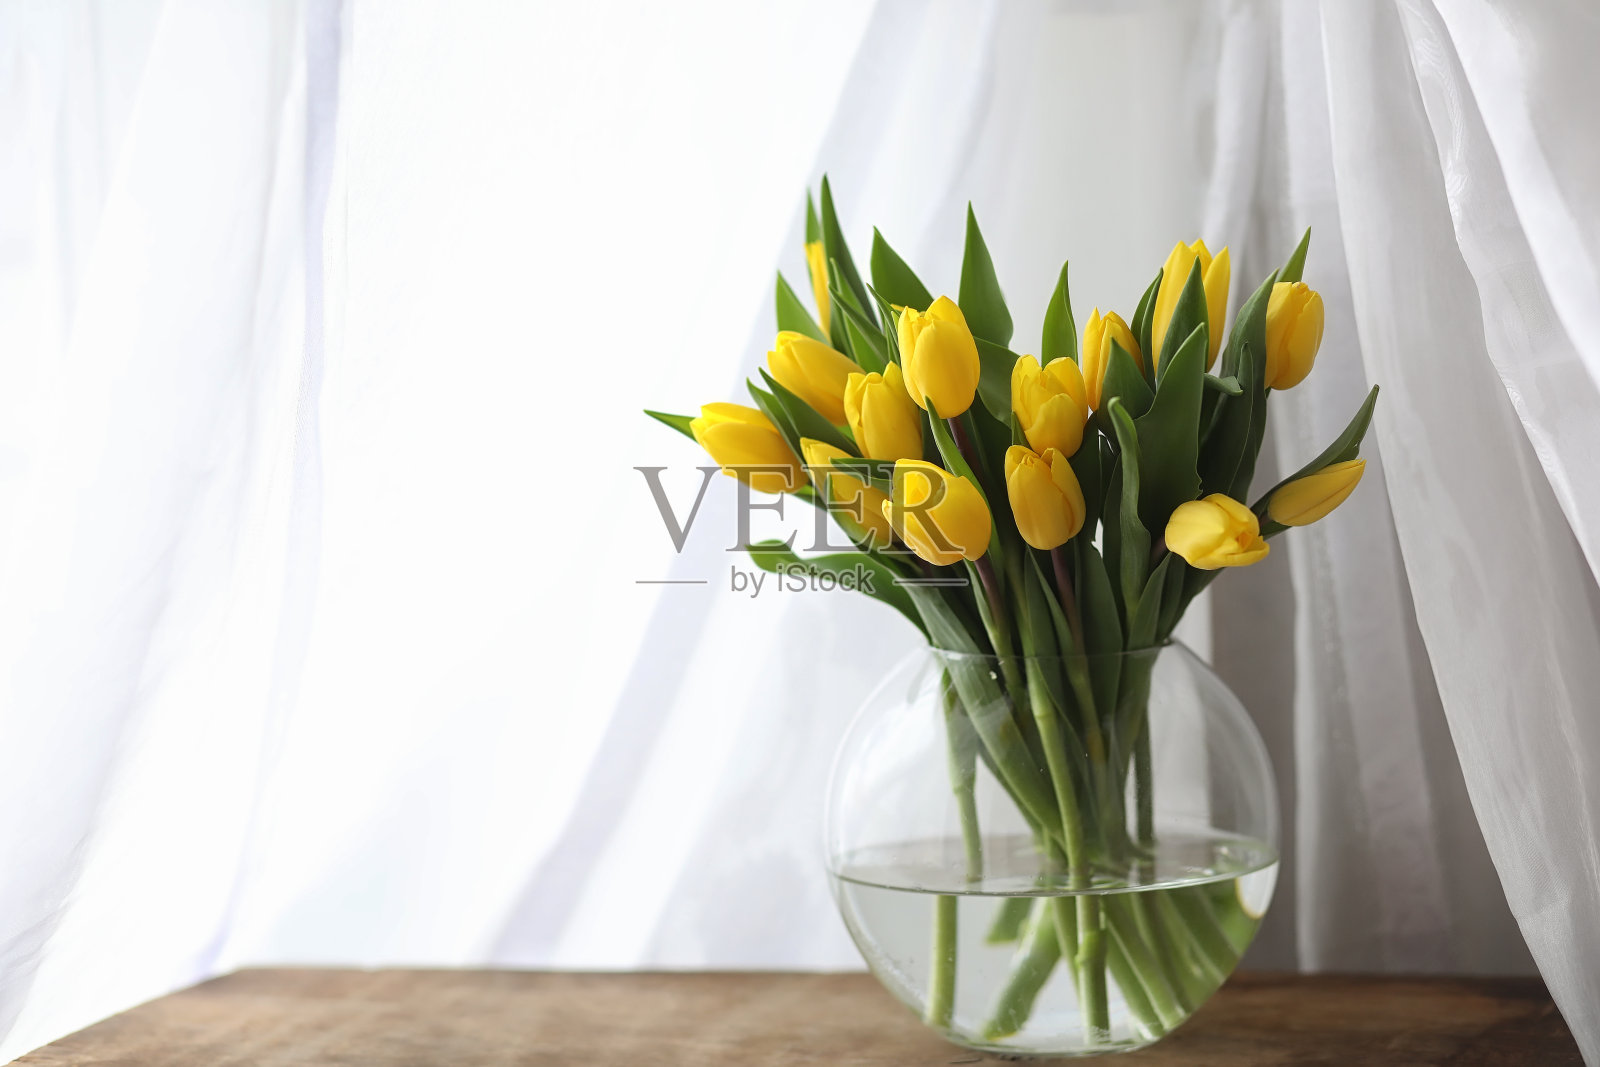 窗台上的花瓶里插着一束黄色郁金香。一份礼物t照片摄影图片